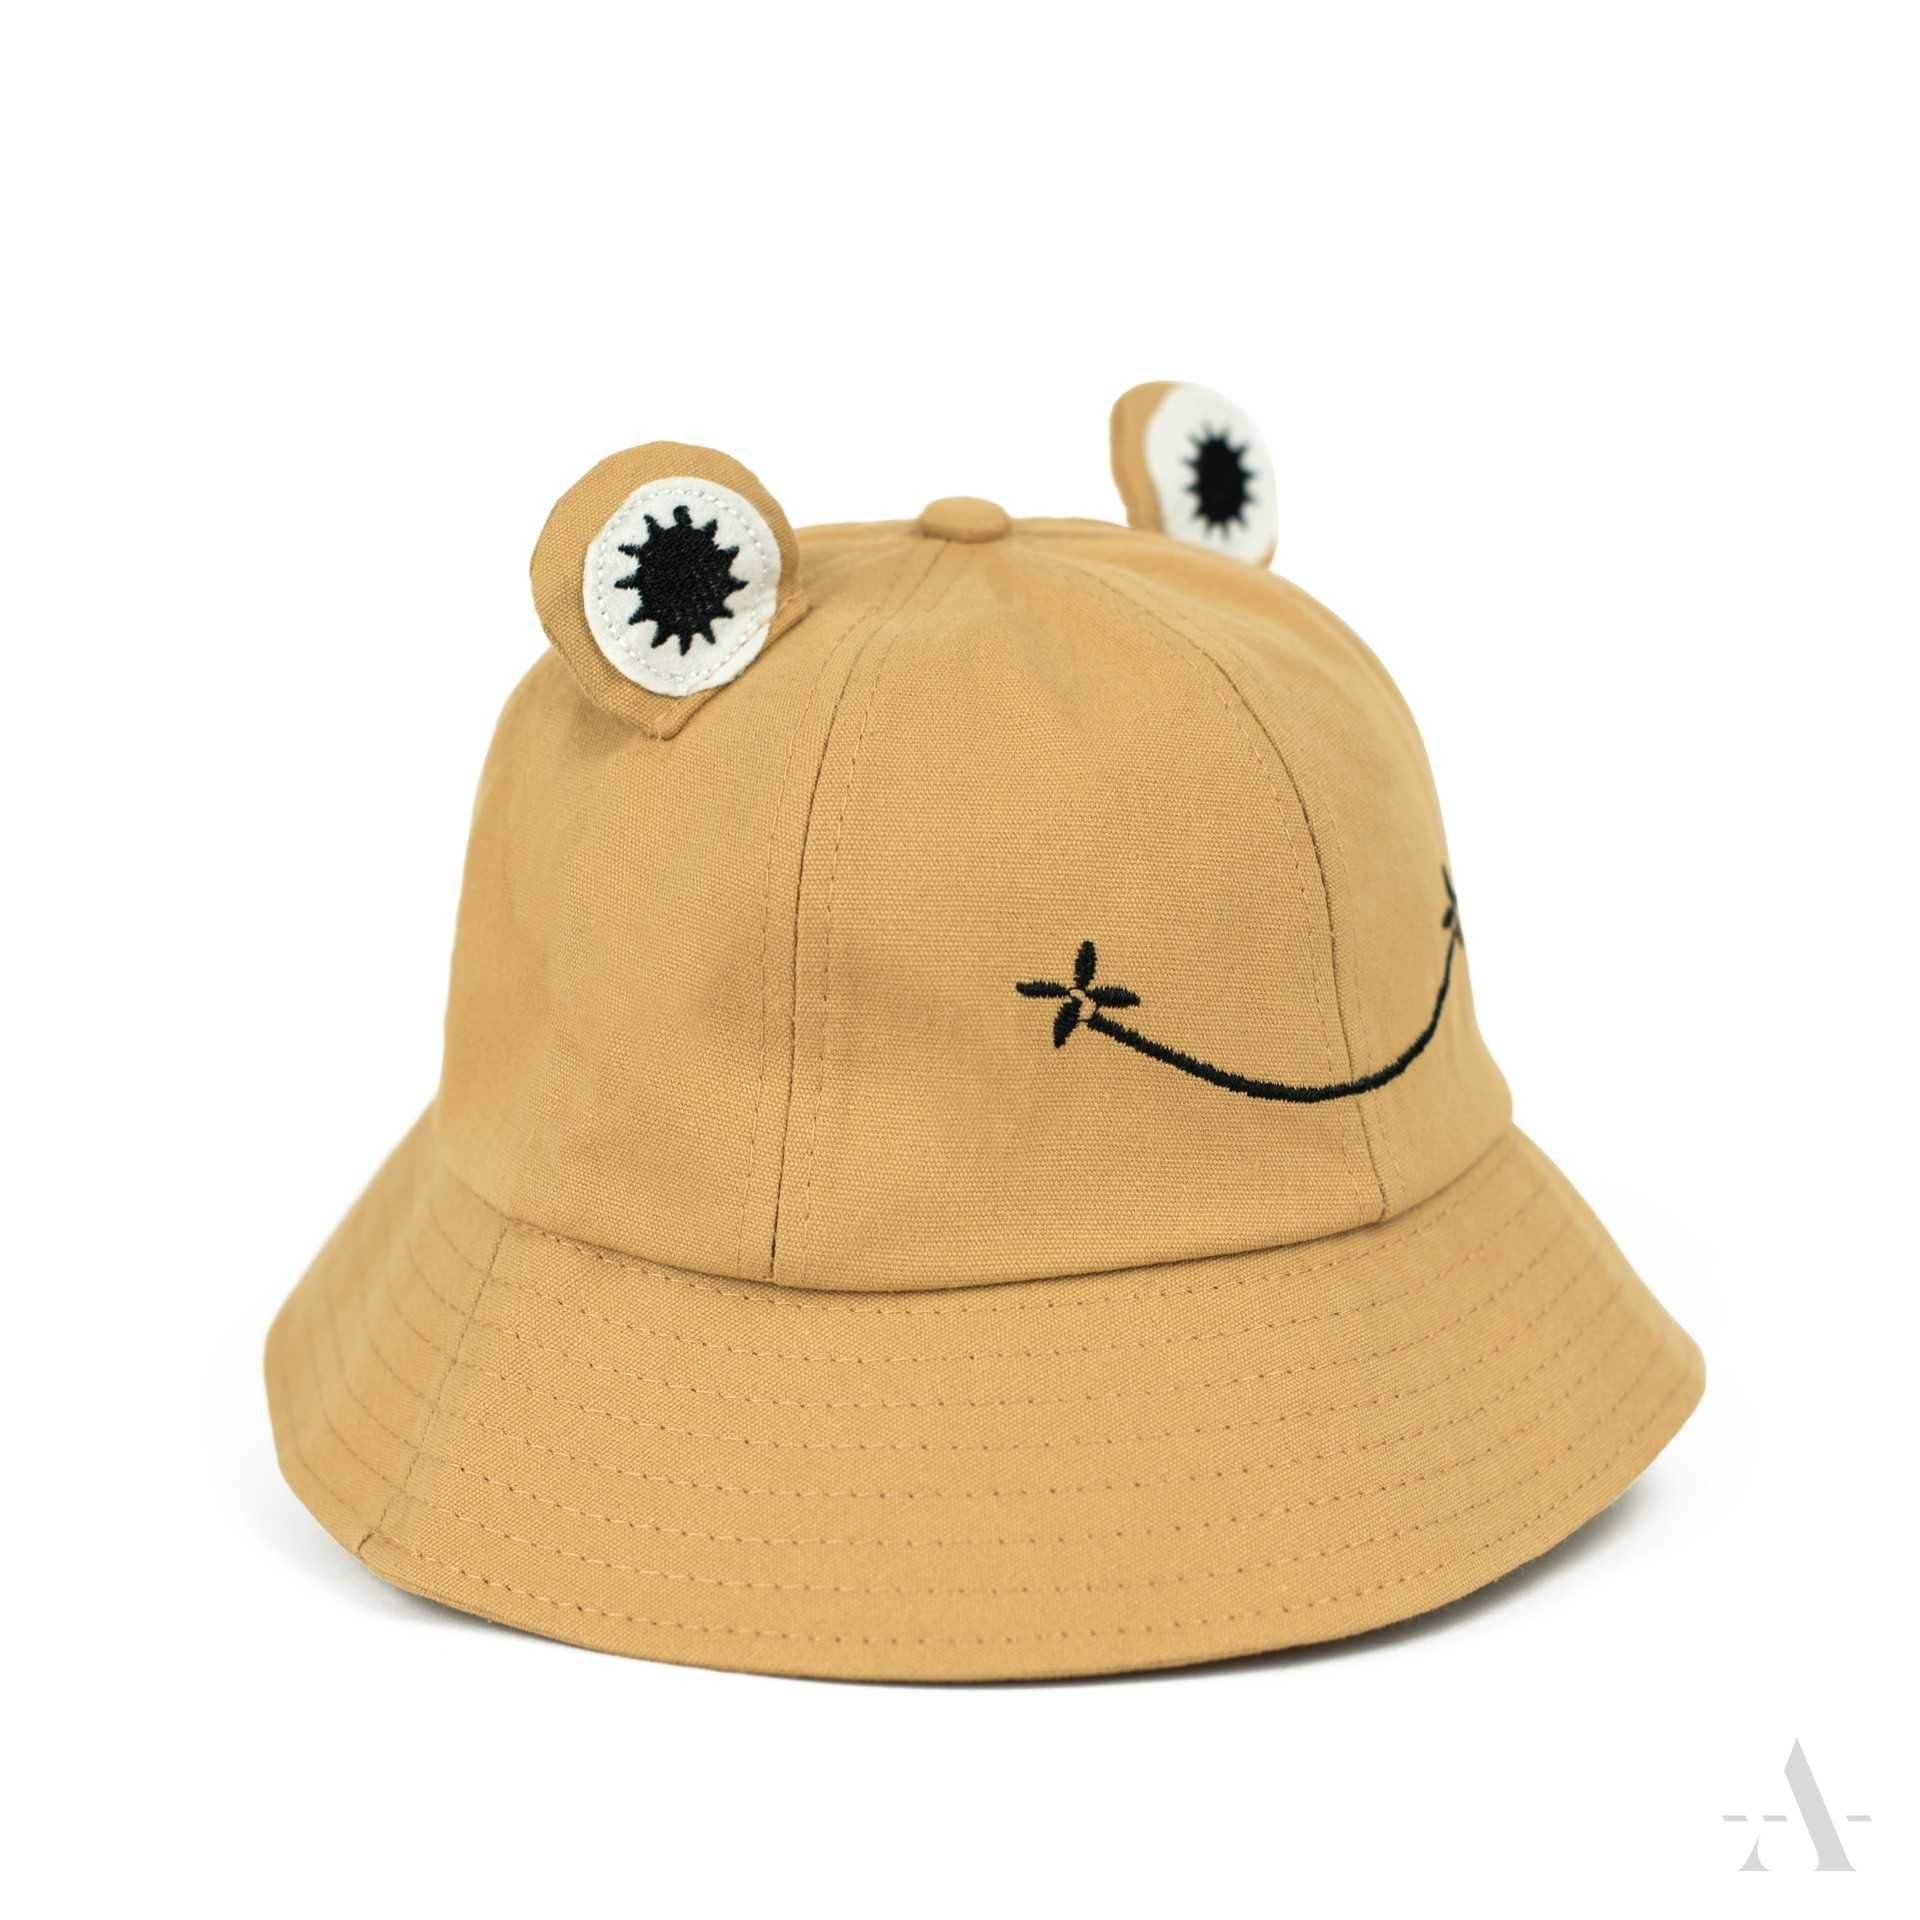 Letni kapelusz typu bucket w modnym motywie sympatycznej żaby.